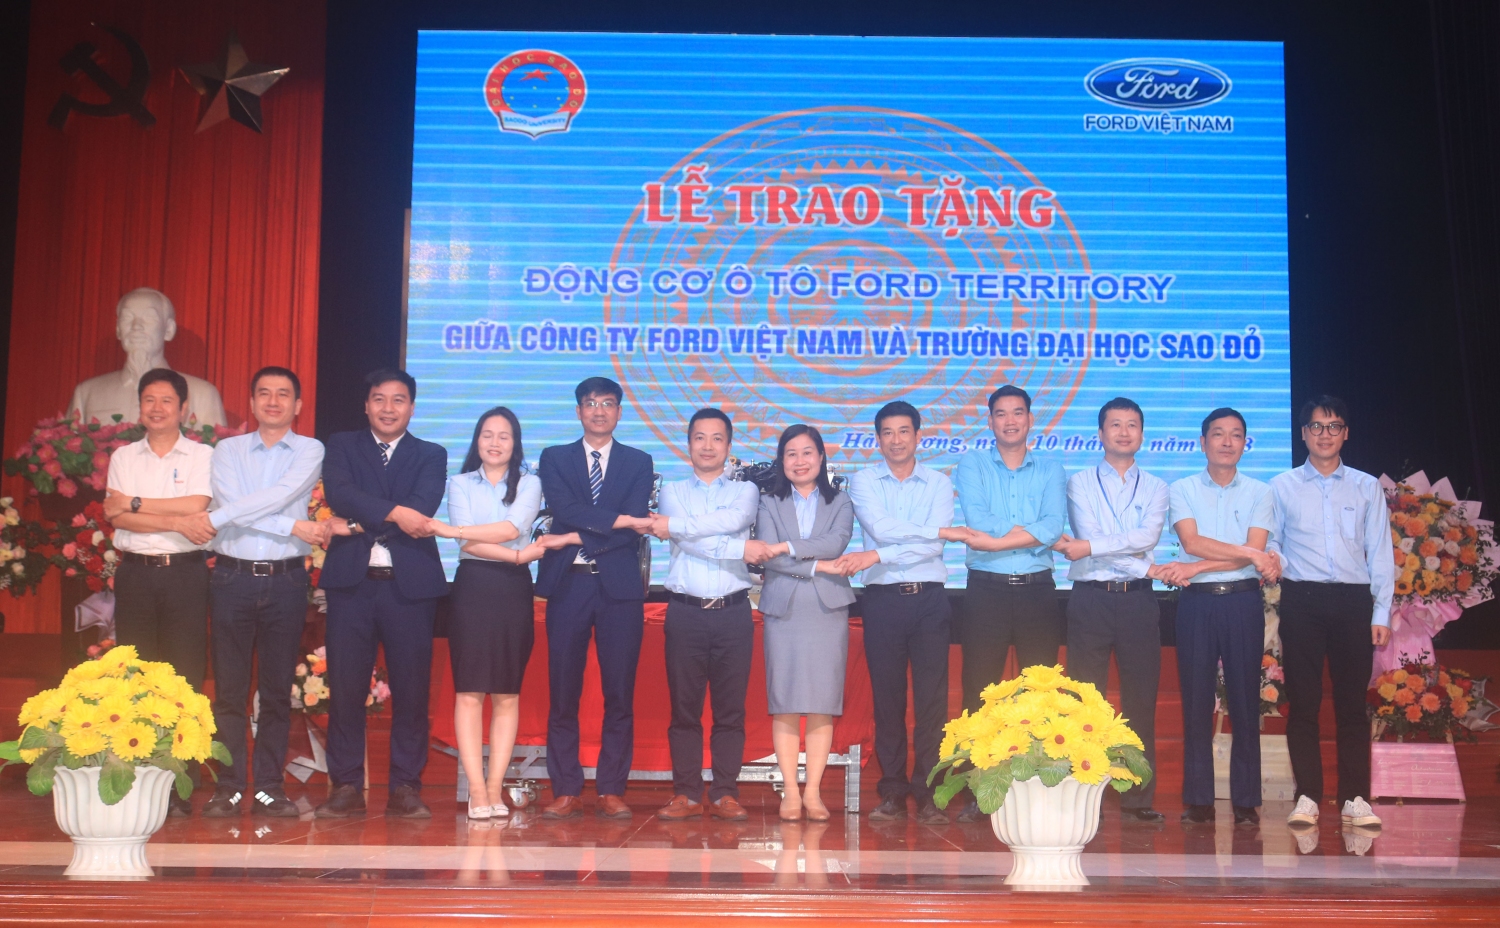 Lễ trao tặng động cơ ô tô Ford Territory giữa công ty Ford Việt Nam và Trường Đại học Sao Đỏ